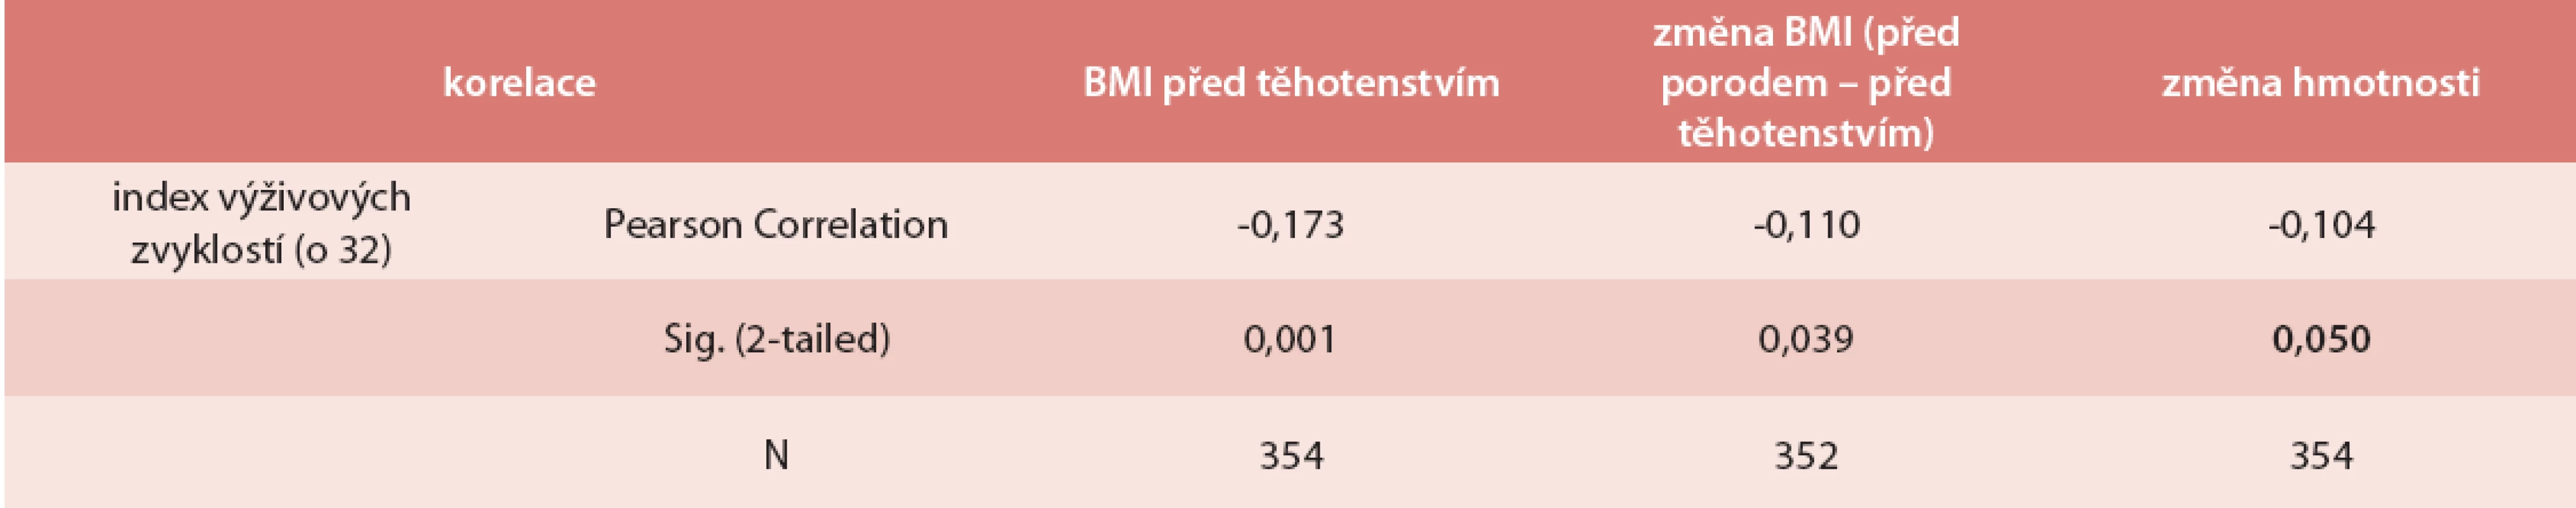 Index výživy a jeho vliv na vstupní BMI a těhotenský přírůstek hmotnosti (korelace)